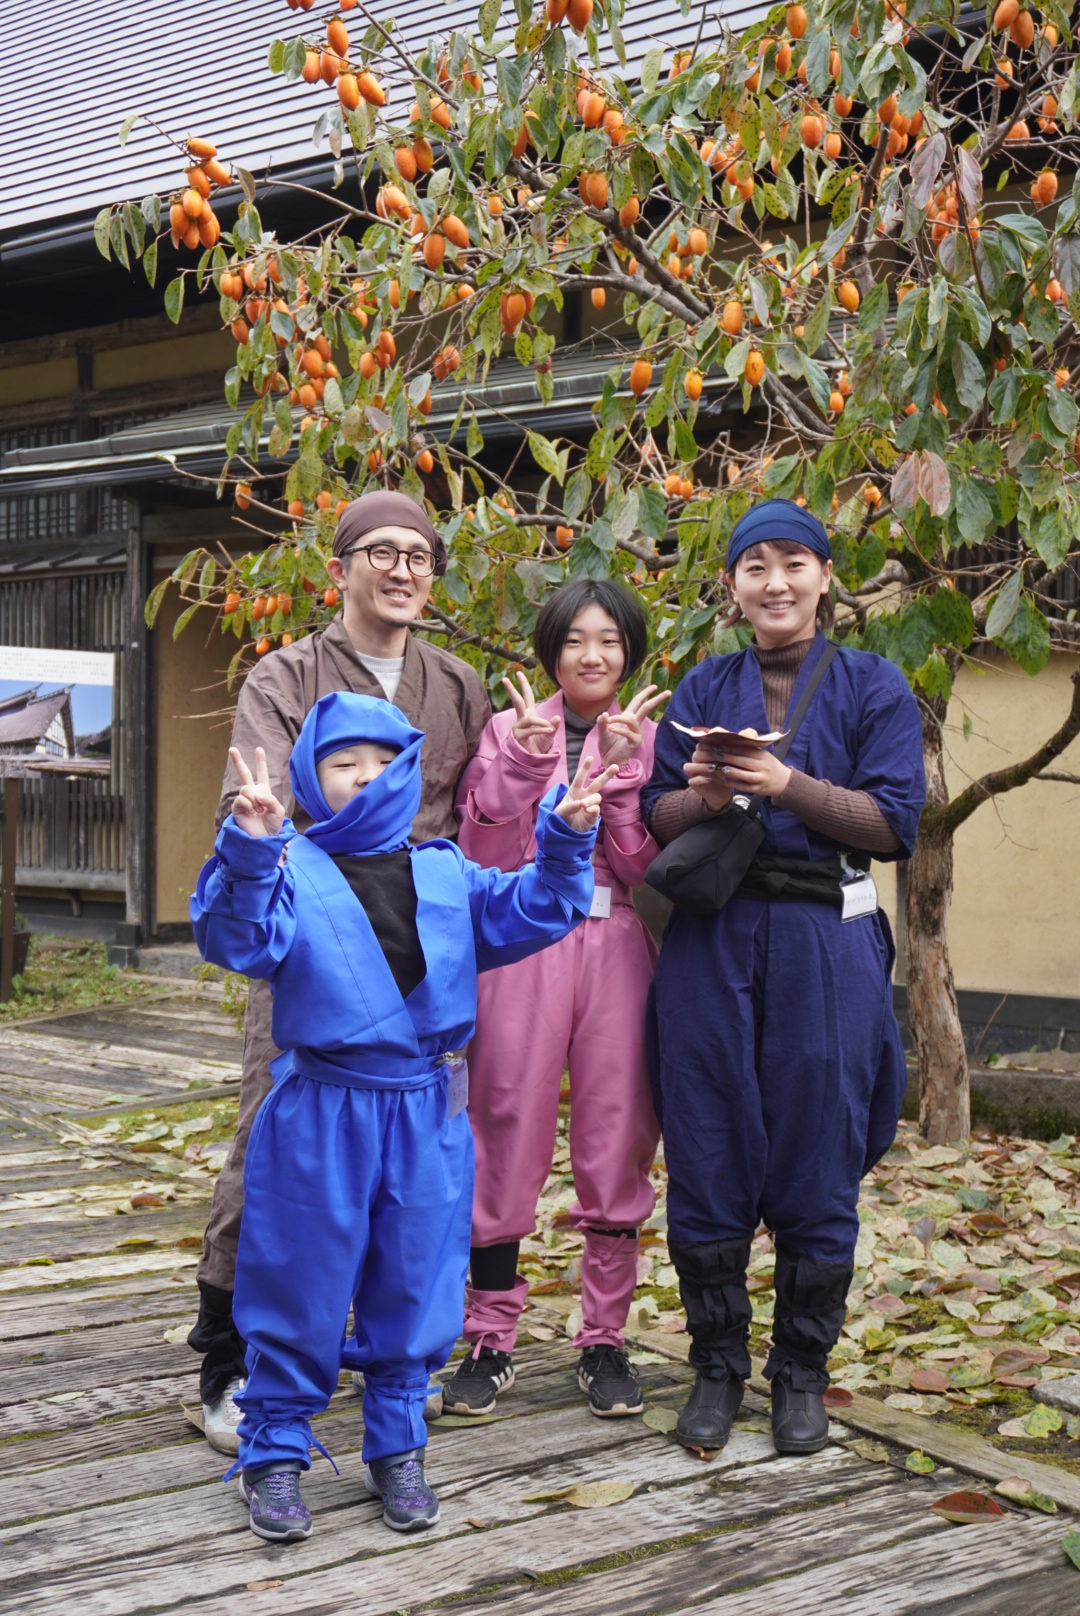 柿木とともに忍者衣装で記念撮影